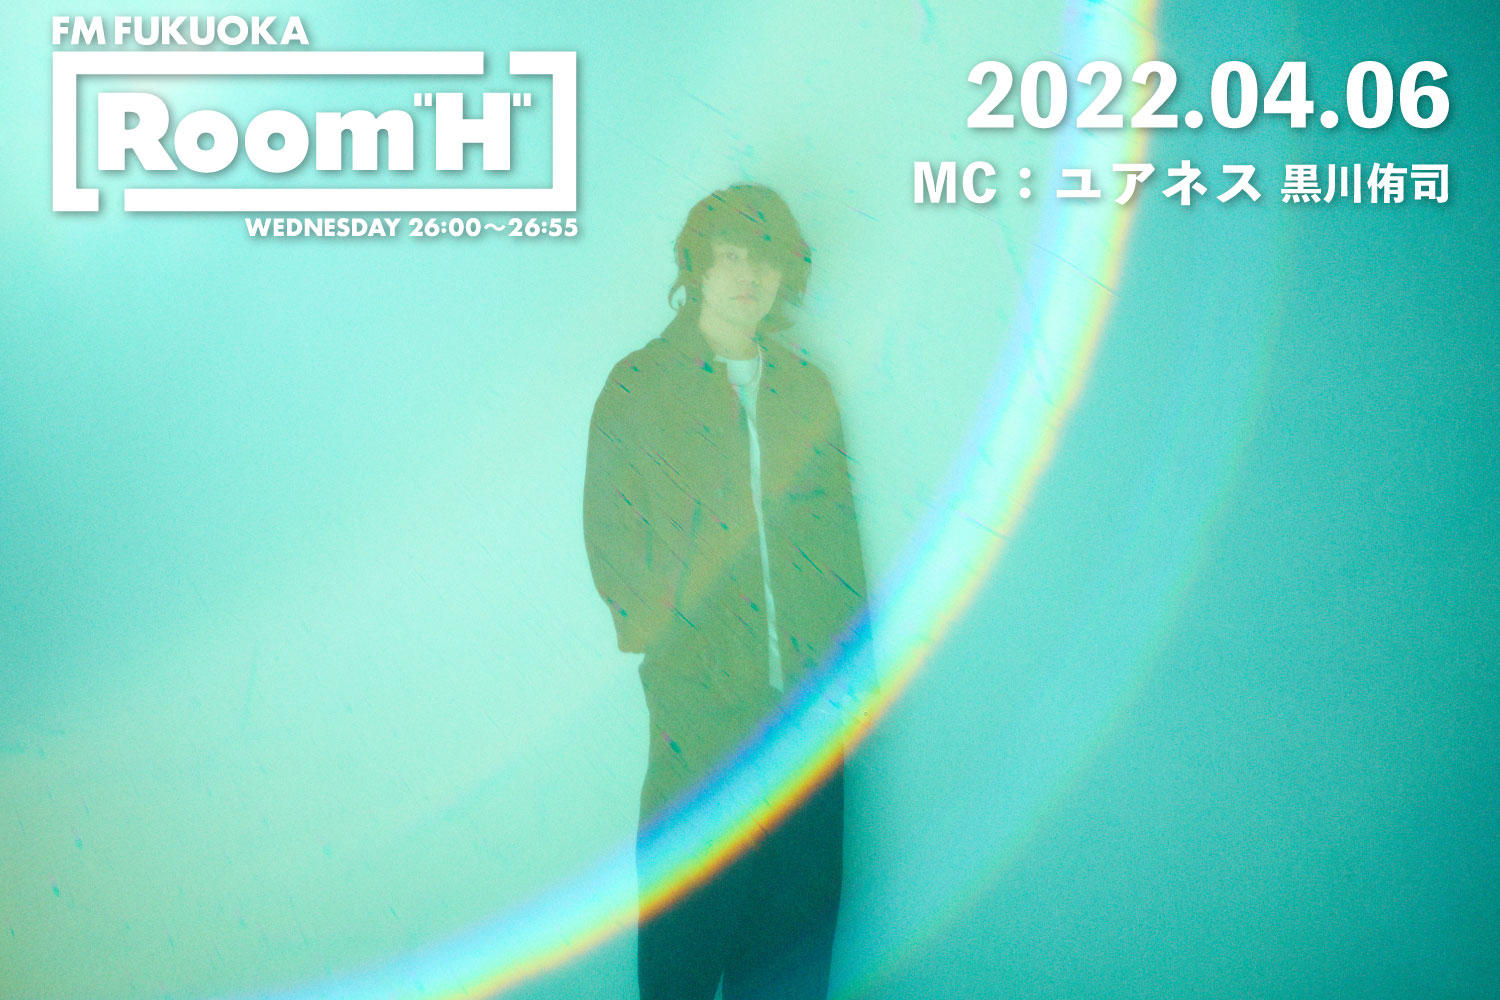 【読むラジオ】MC：黒川侑司(ユアネス) 春にぴったりなアニソンを紹介！「Room H」 -2022.04.06-